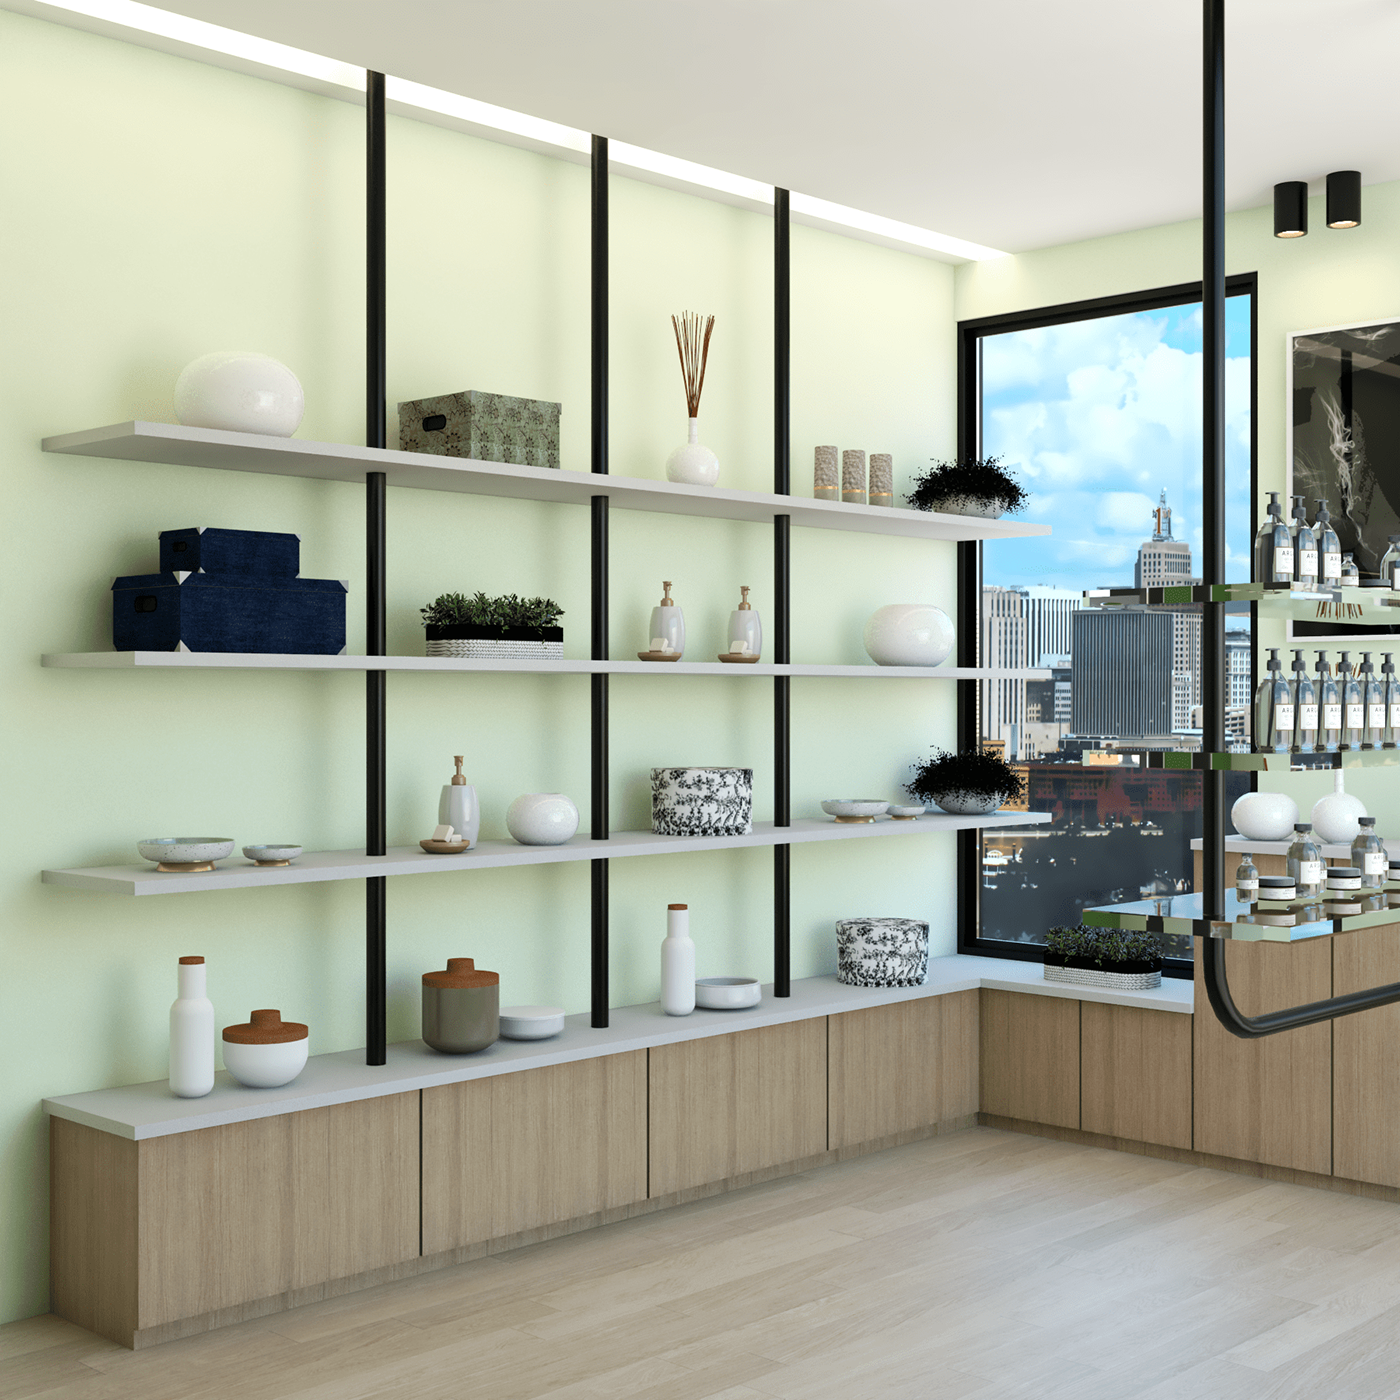 croqui design de interiores interior design  interiores comerciais loja em 3d Modelagem projeto 3d